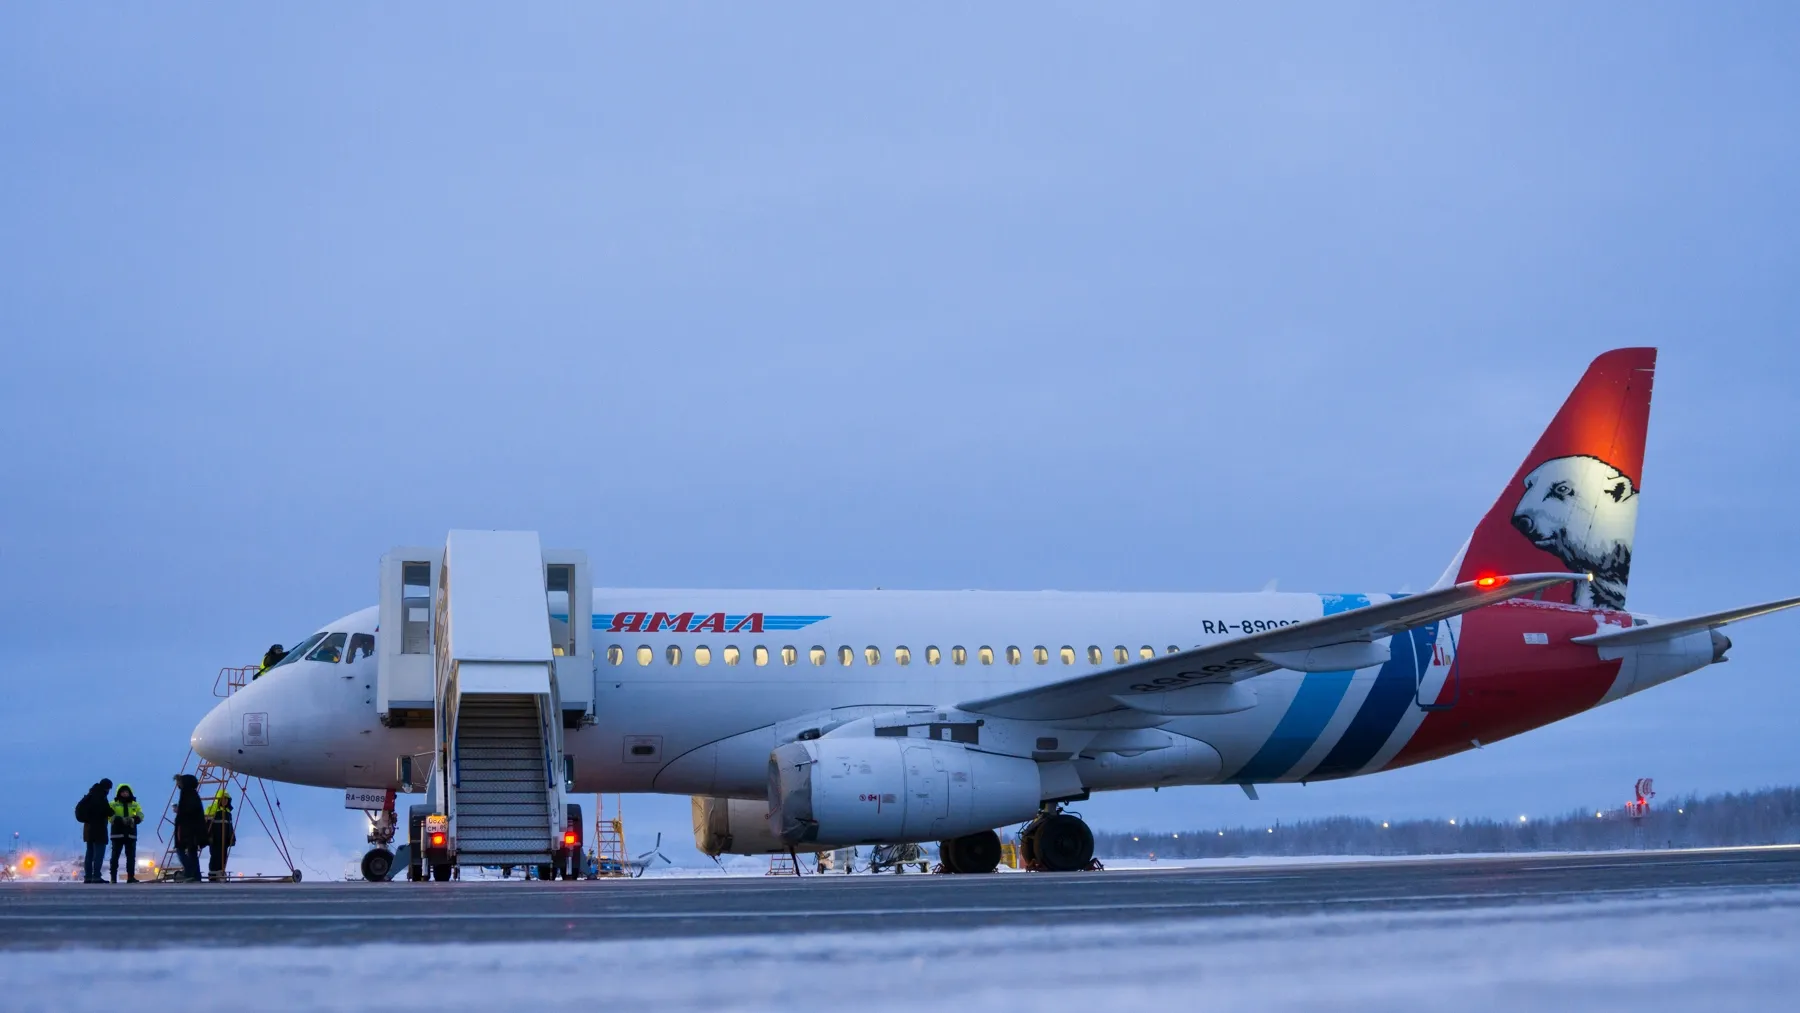 С 26 декабря в новом здание аэровокзала начинается регулярное обслуживание пассажиров. Первые рейсы — из Москвы и обратно уже утром выполнит авиакомпания «Ямал». Пропускная способность нового авиаузла — более 800 человек в час.